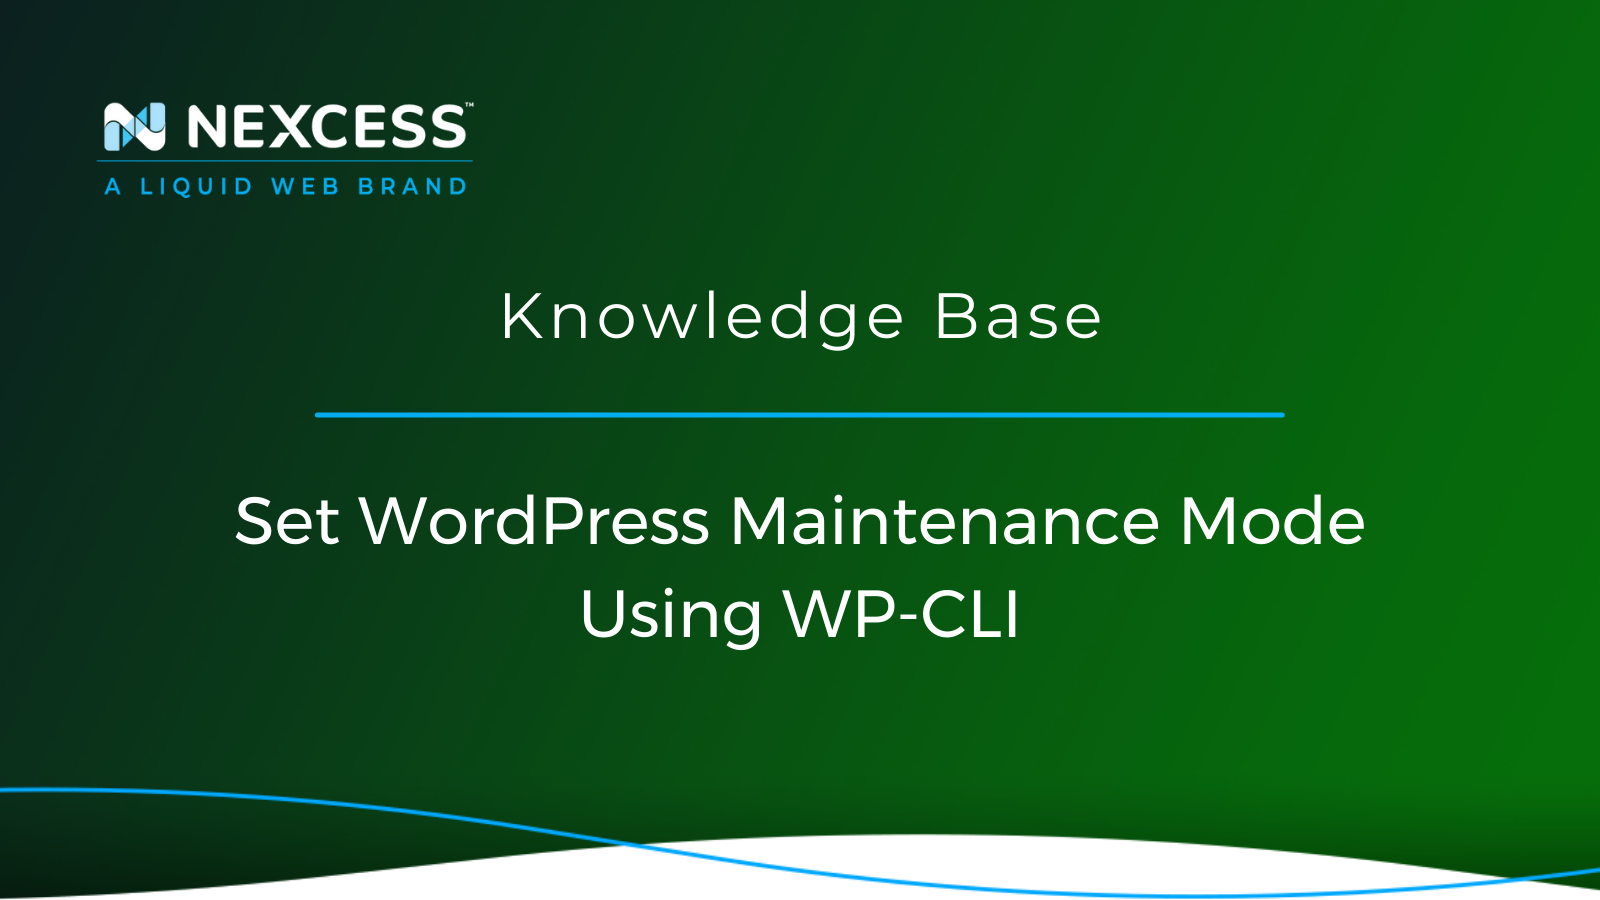 Set WordPress Maintenance Mode Using WP-CLI